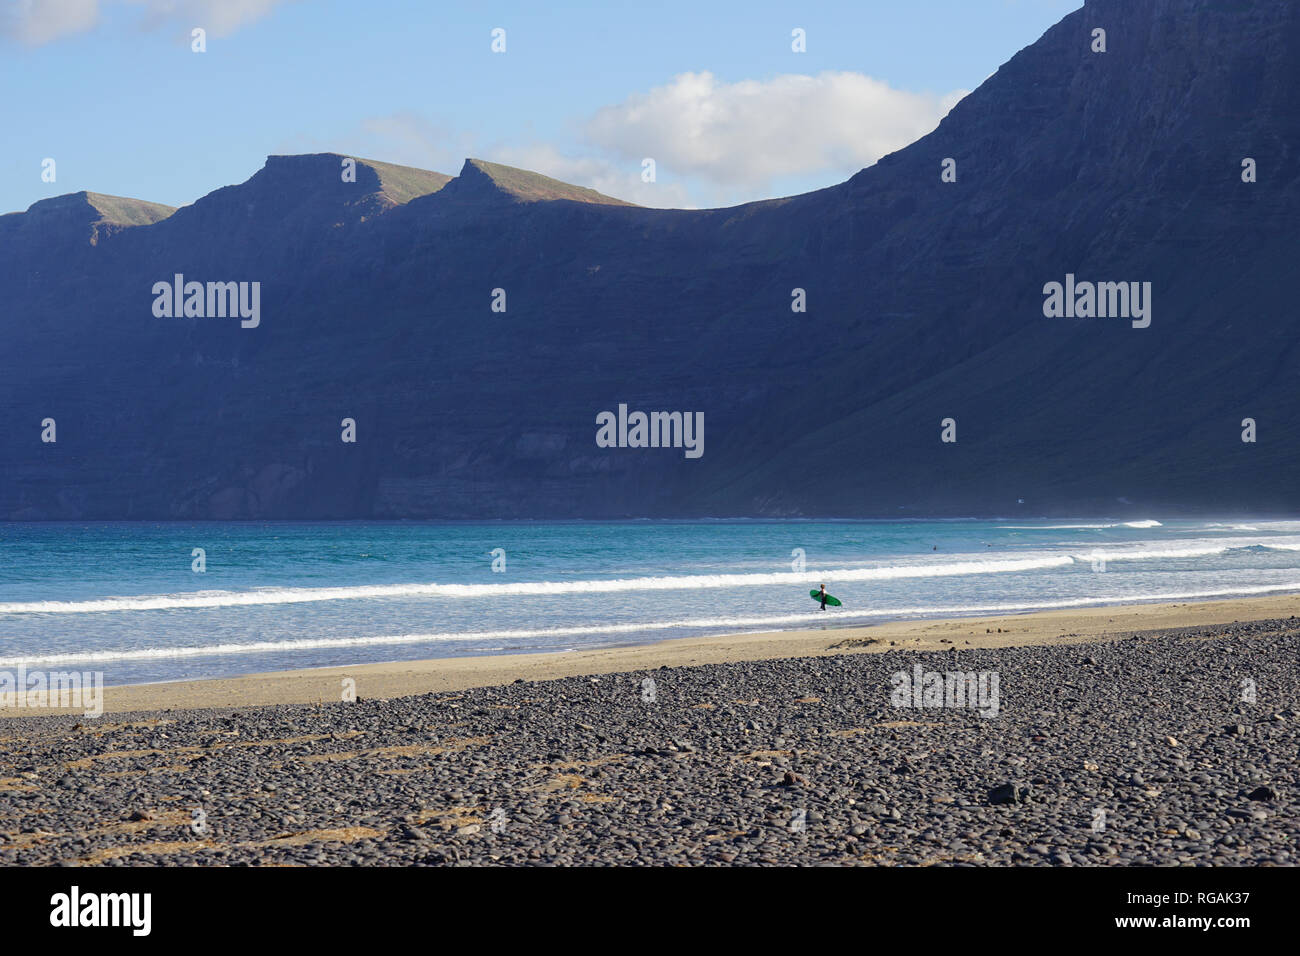 Surfer mit Surfbrett, Playa de Famara, Riscos de Famara, Lanzarote, Kanarische Inseln, Spanien Stock Photo